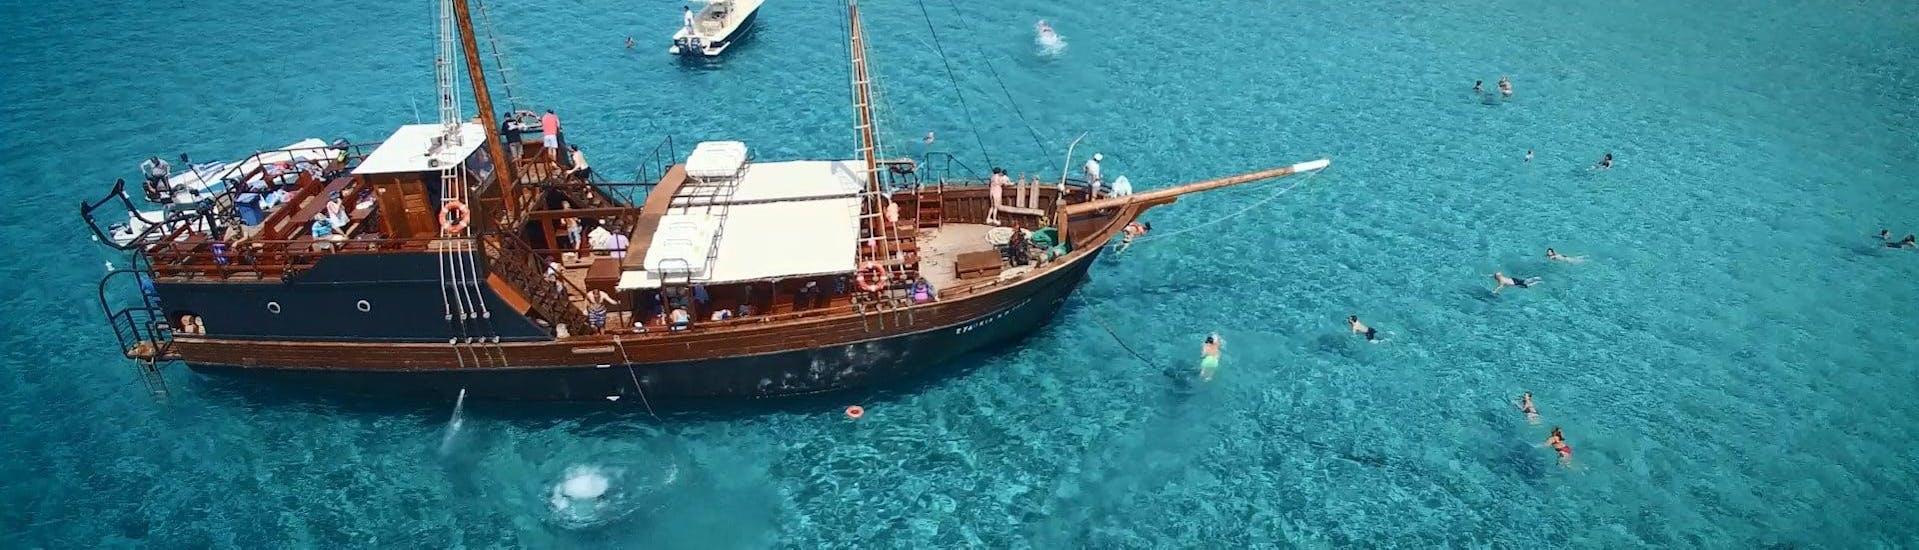 Foto van de piratenboot die gebruikt wordt voor de boottochten van Cretan Daily Cruises - Chrissi Islands.